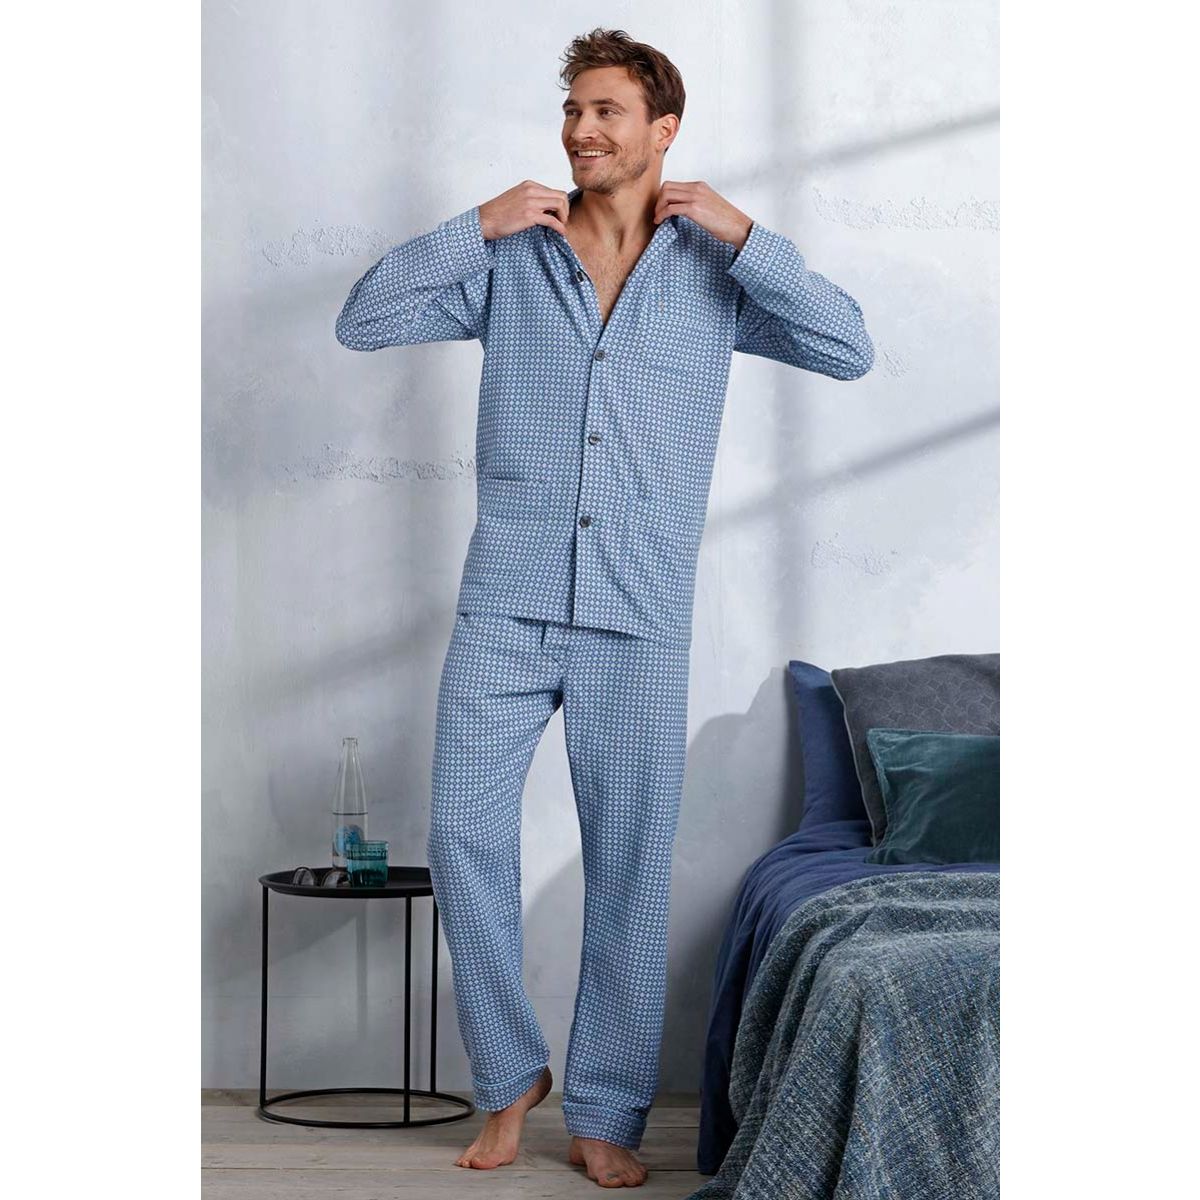 officieel Mammoet Kruiden Flanellen doorknoop heren pyjama blauw | Gratis verzending en retour |  Online de mooiste pyjama's, nachthemden, ondermode en meer